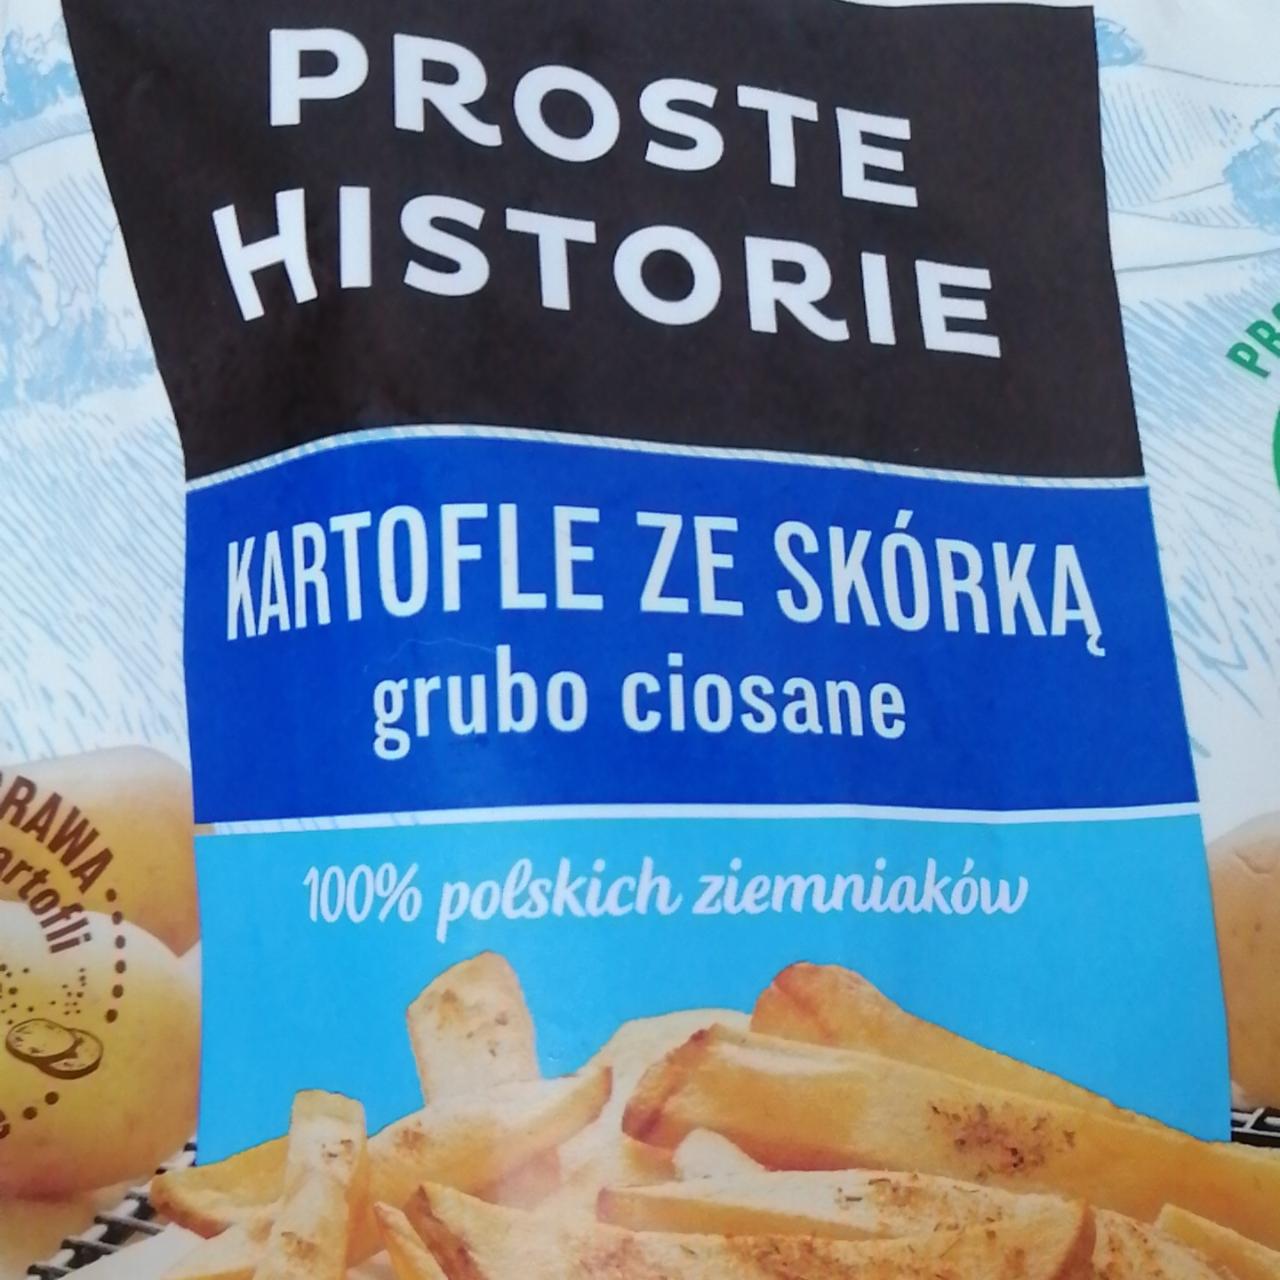 Zdjęcia - Proste Historie Kartofle ze skórką grubo ciosane 600 g